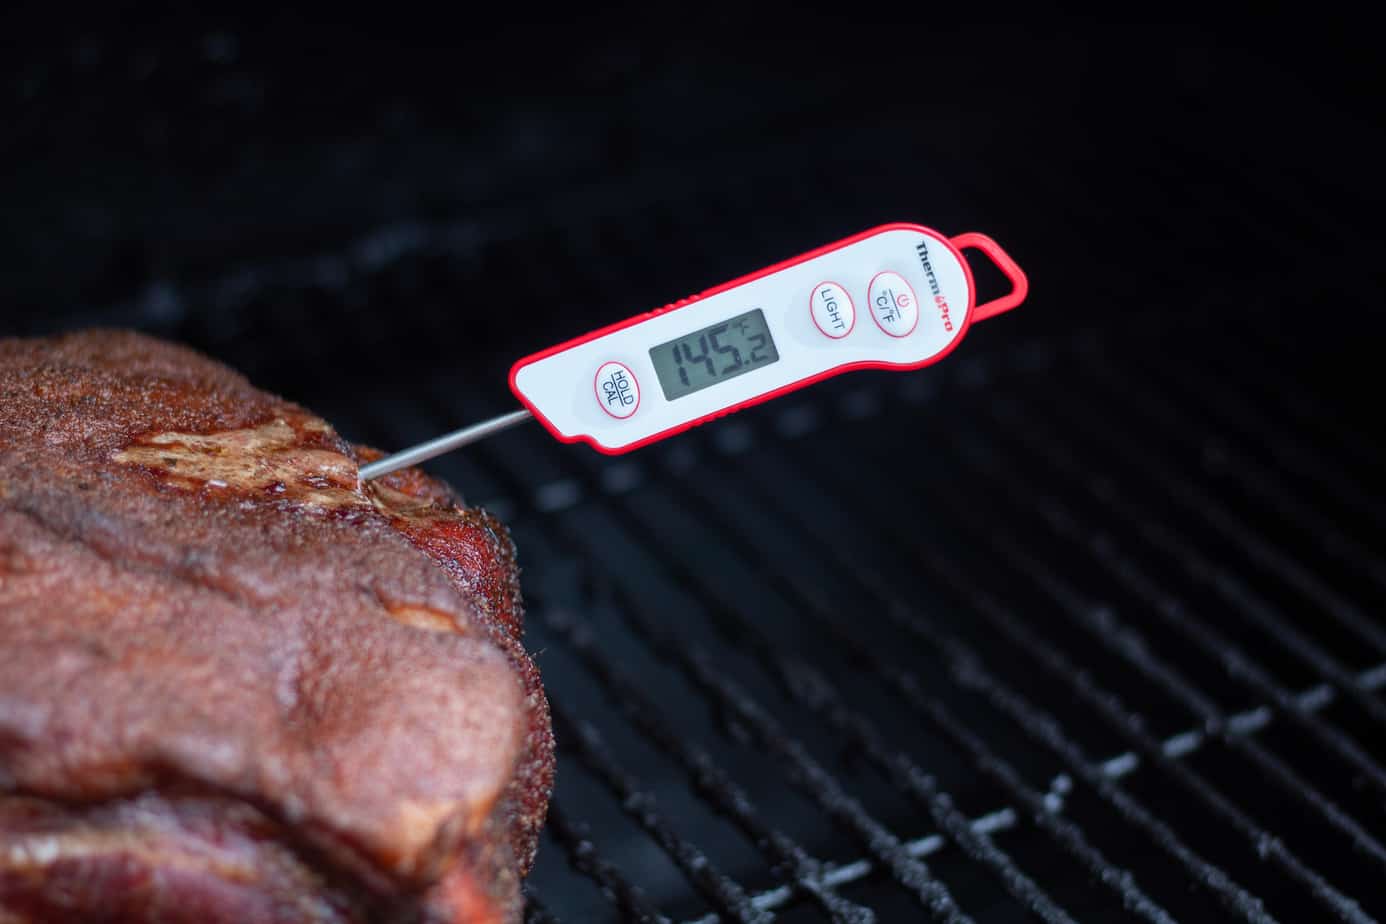 ThermoPro TP15 Termometro Cucina Impermeabile con Sonda Lunga